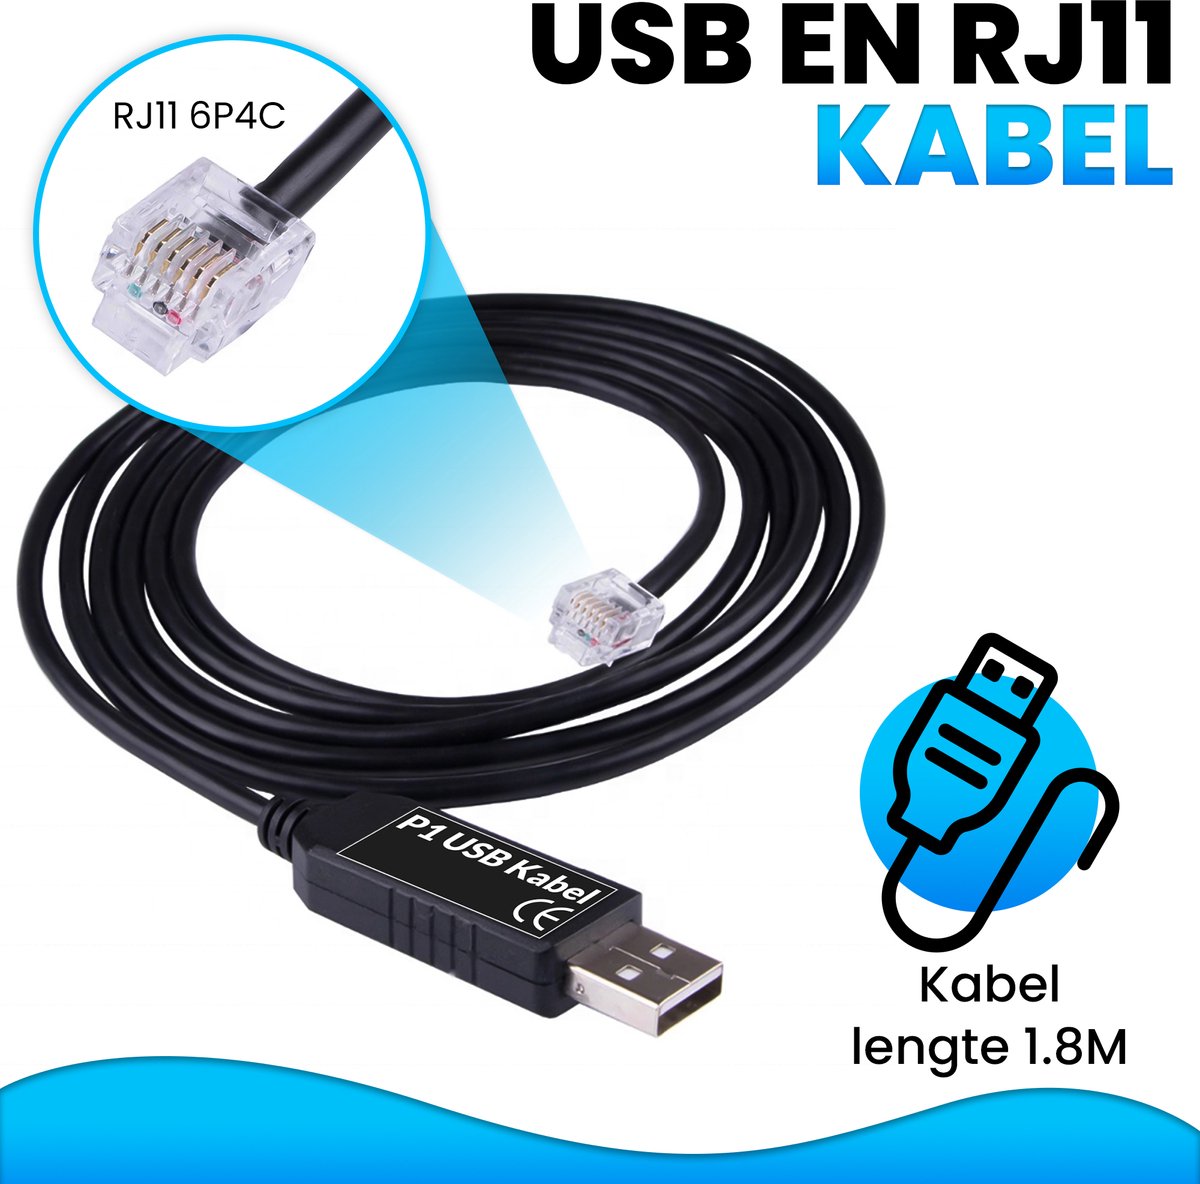 Slimme Meter Kabel - P1 Meter - P1 USB en RJ11 - 1.8m bol.com